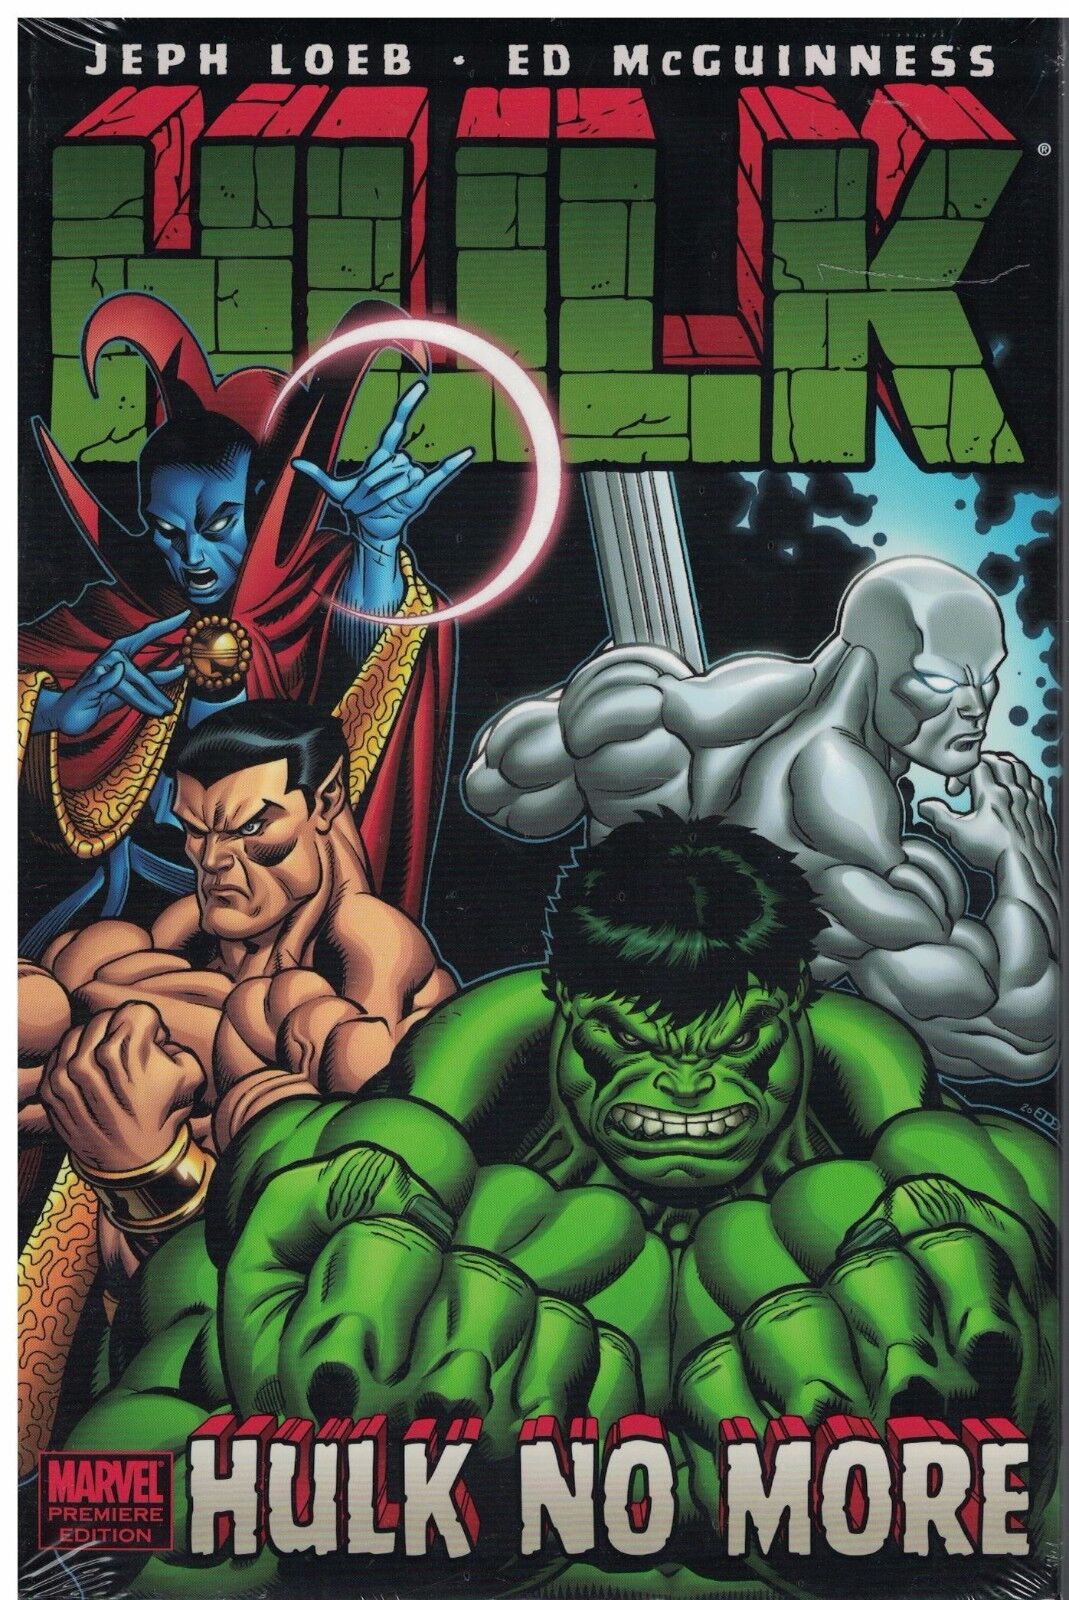 Hulk Hulk No More Volume 3  HC  NEW  SEALED   OOP   